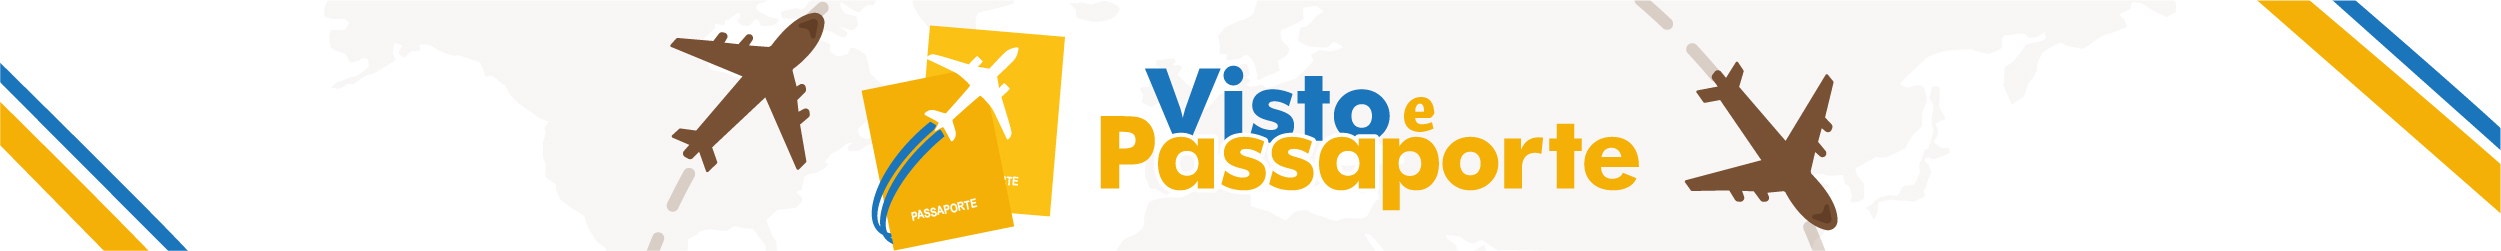 Visto e Passaporte